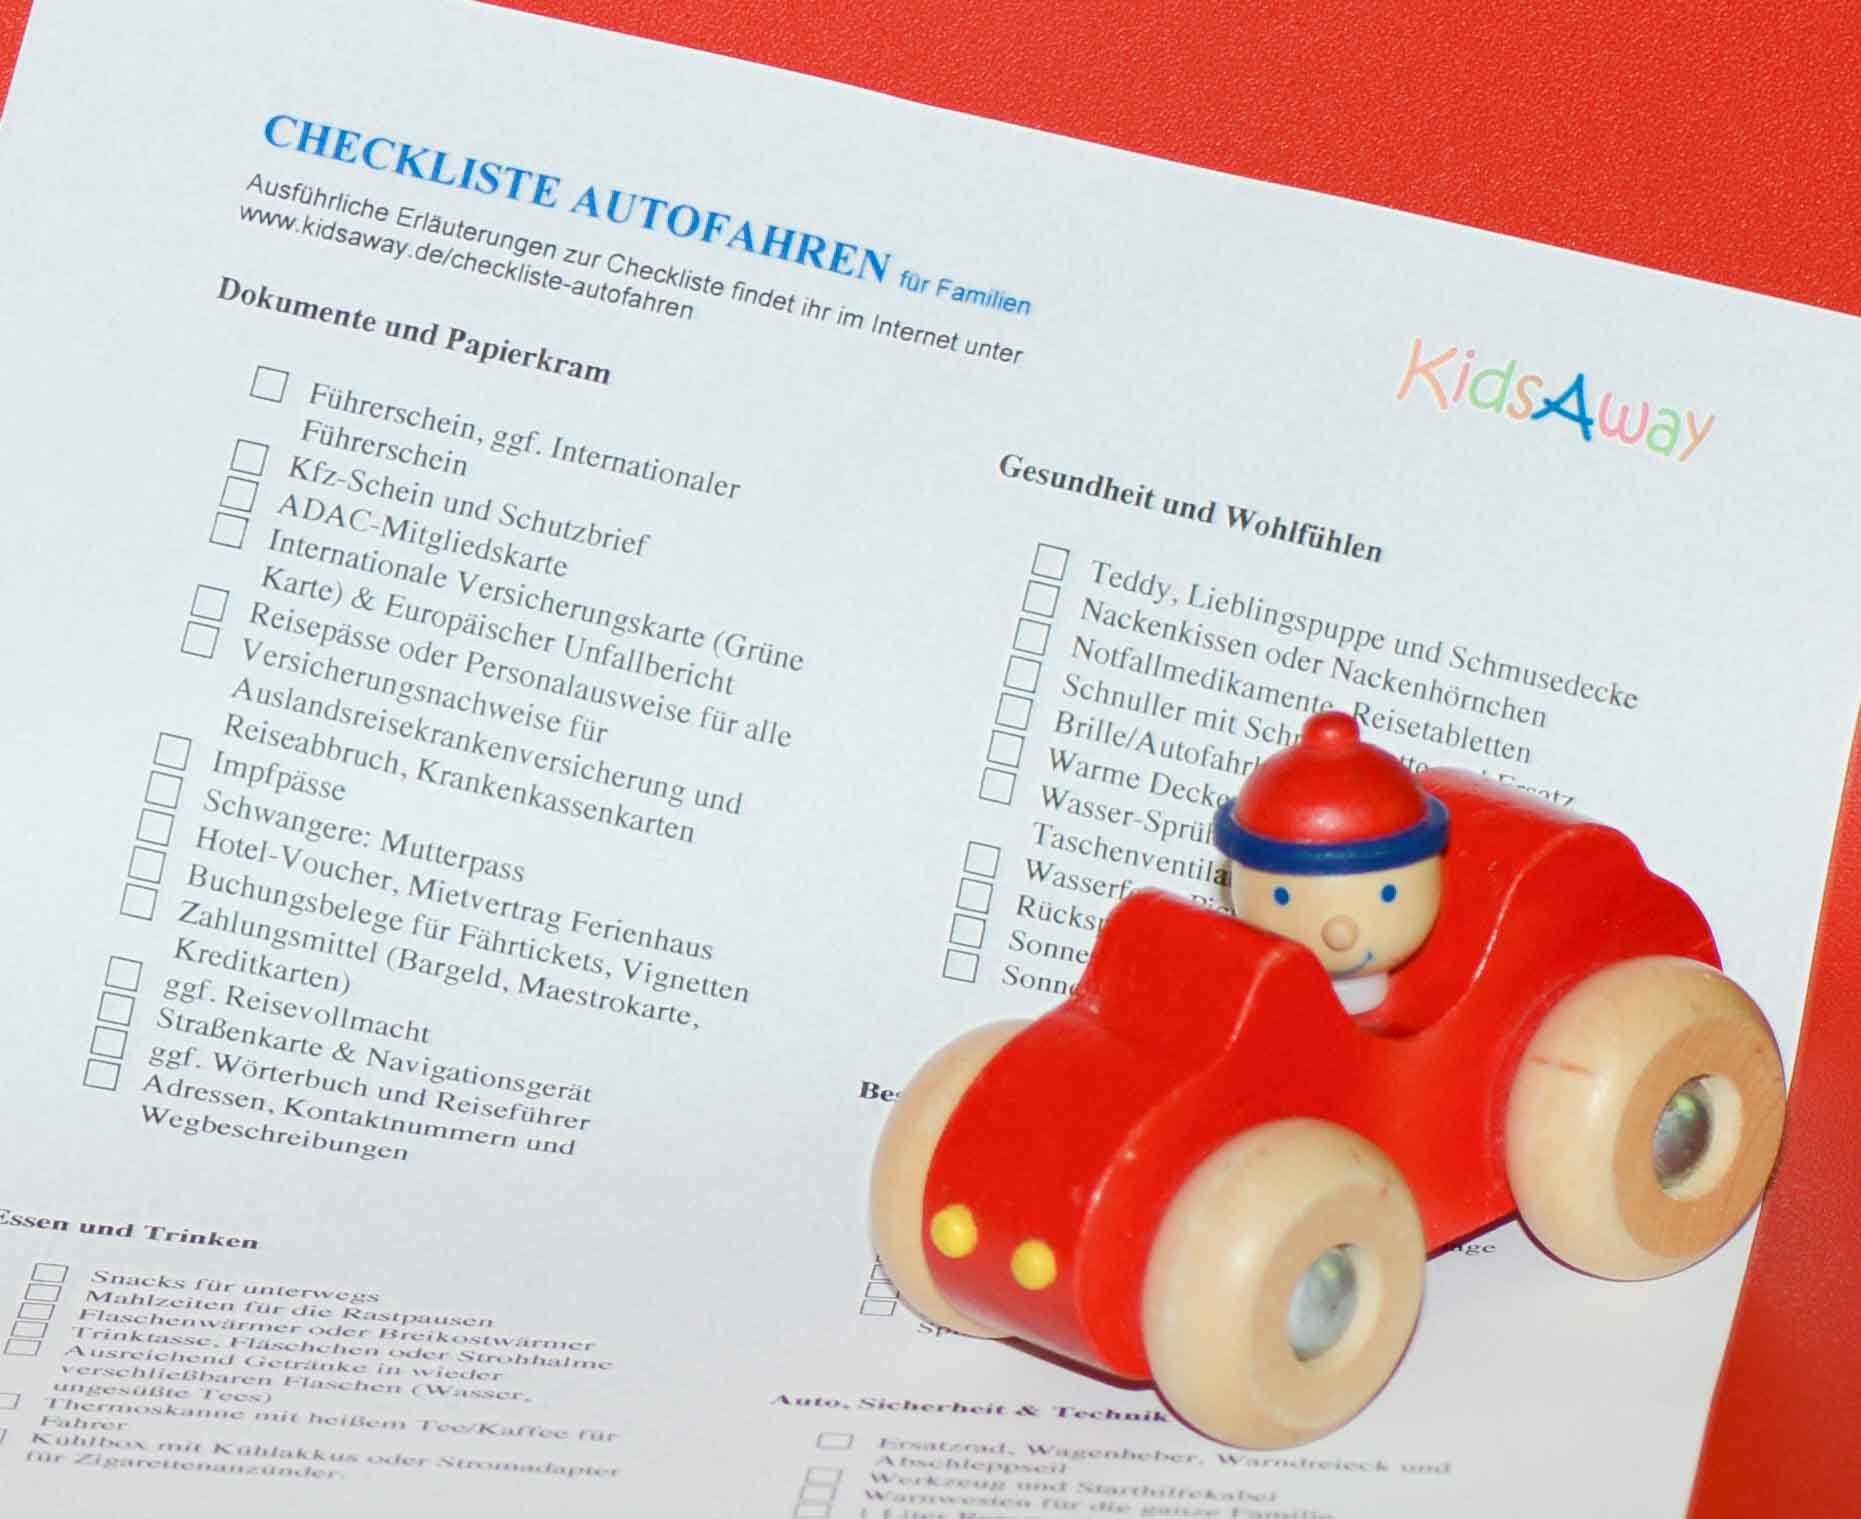 Packliste für lange Autofahrten mit Kind - was muss mit? © KidsAway.de